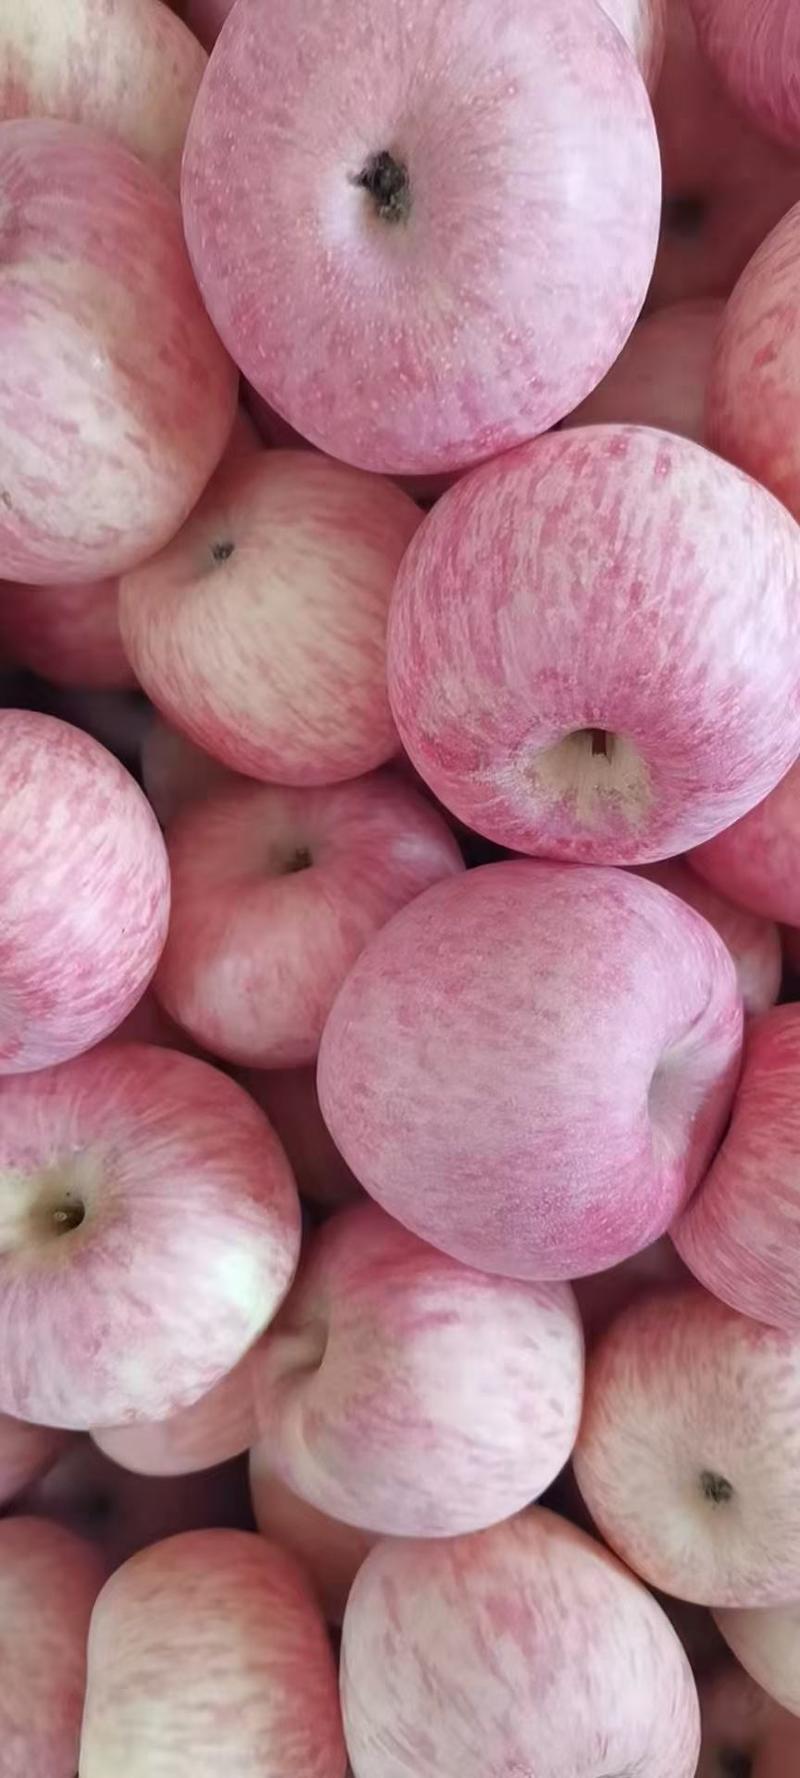 礼泉苹果膜袋苹果红富士苹果陕西苹果产地一手货源